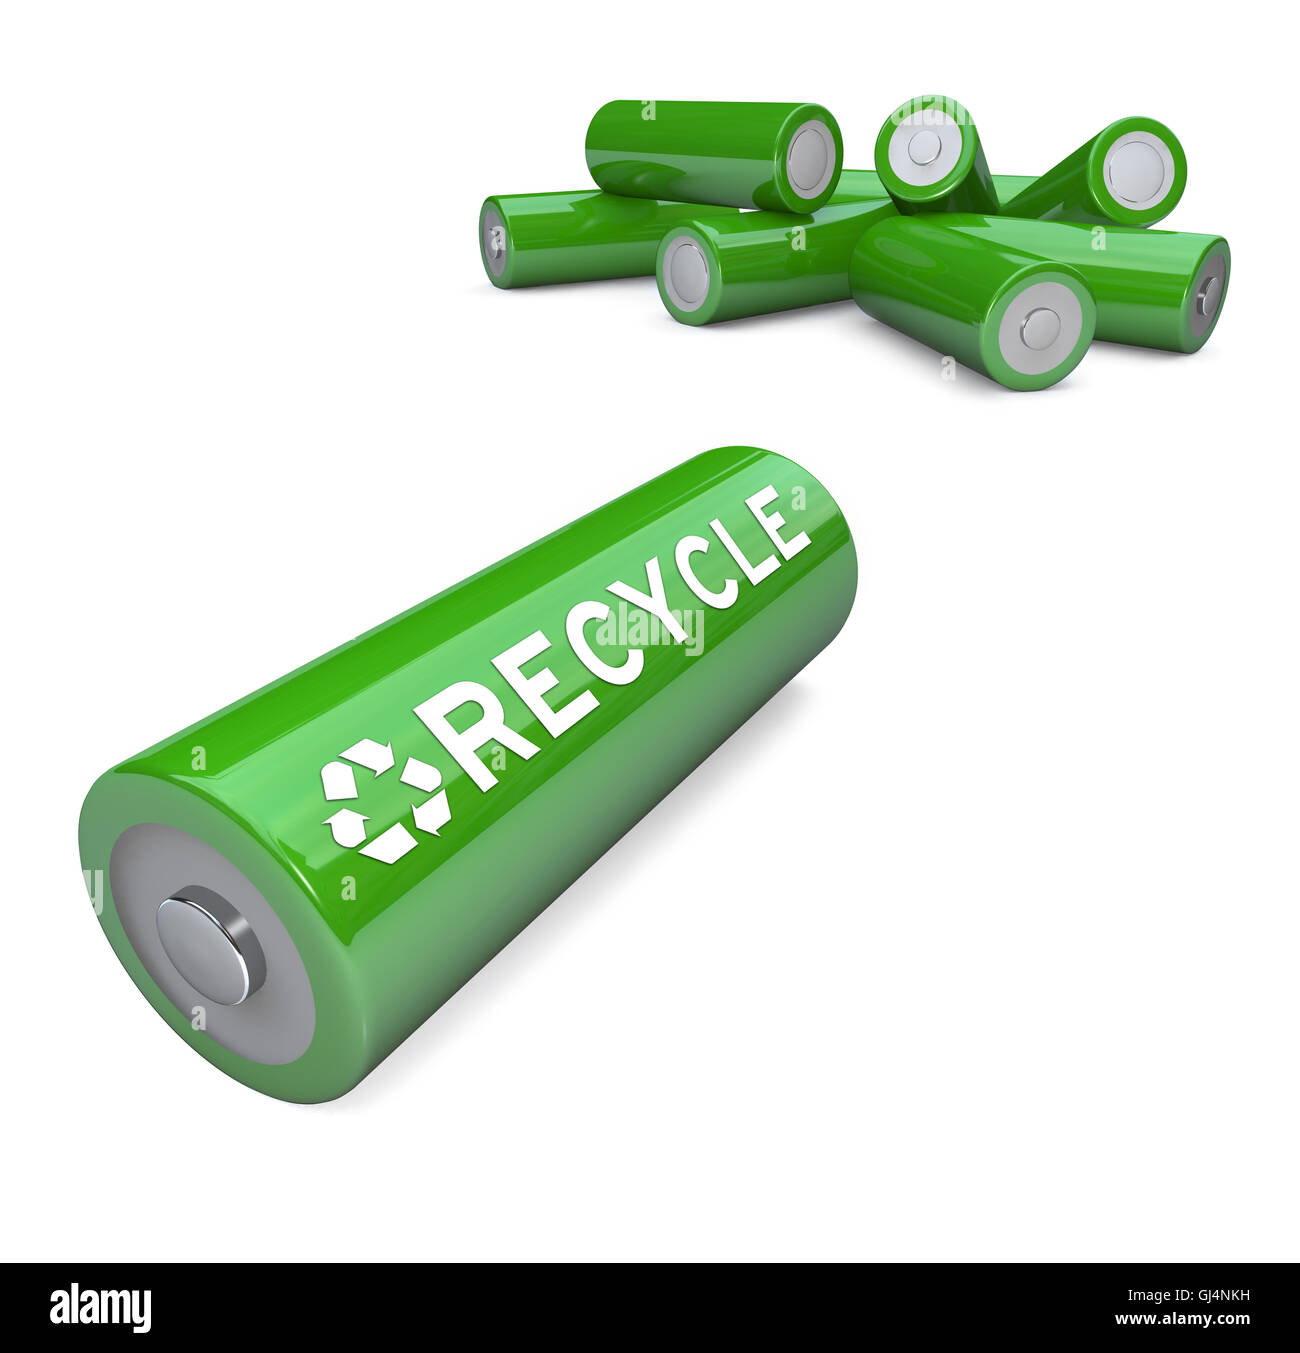 Des batteries écologiques - Symbole de recyclage sur pile AA Banque D'Images